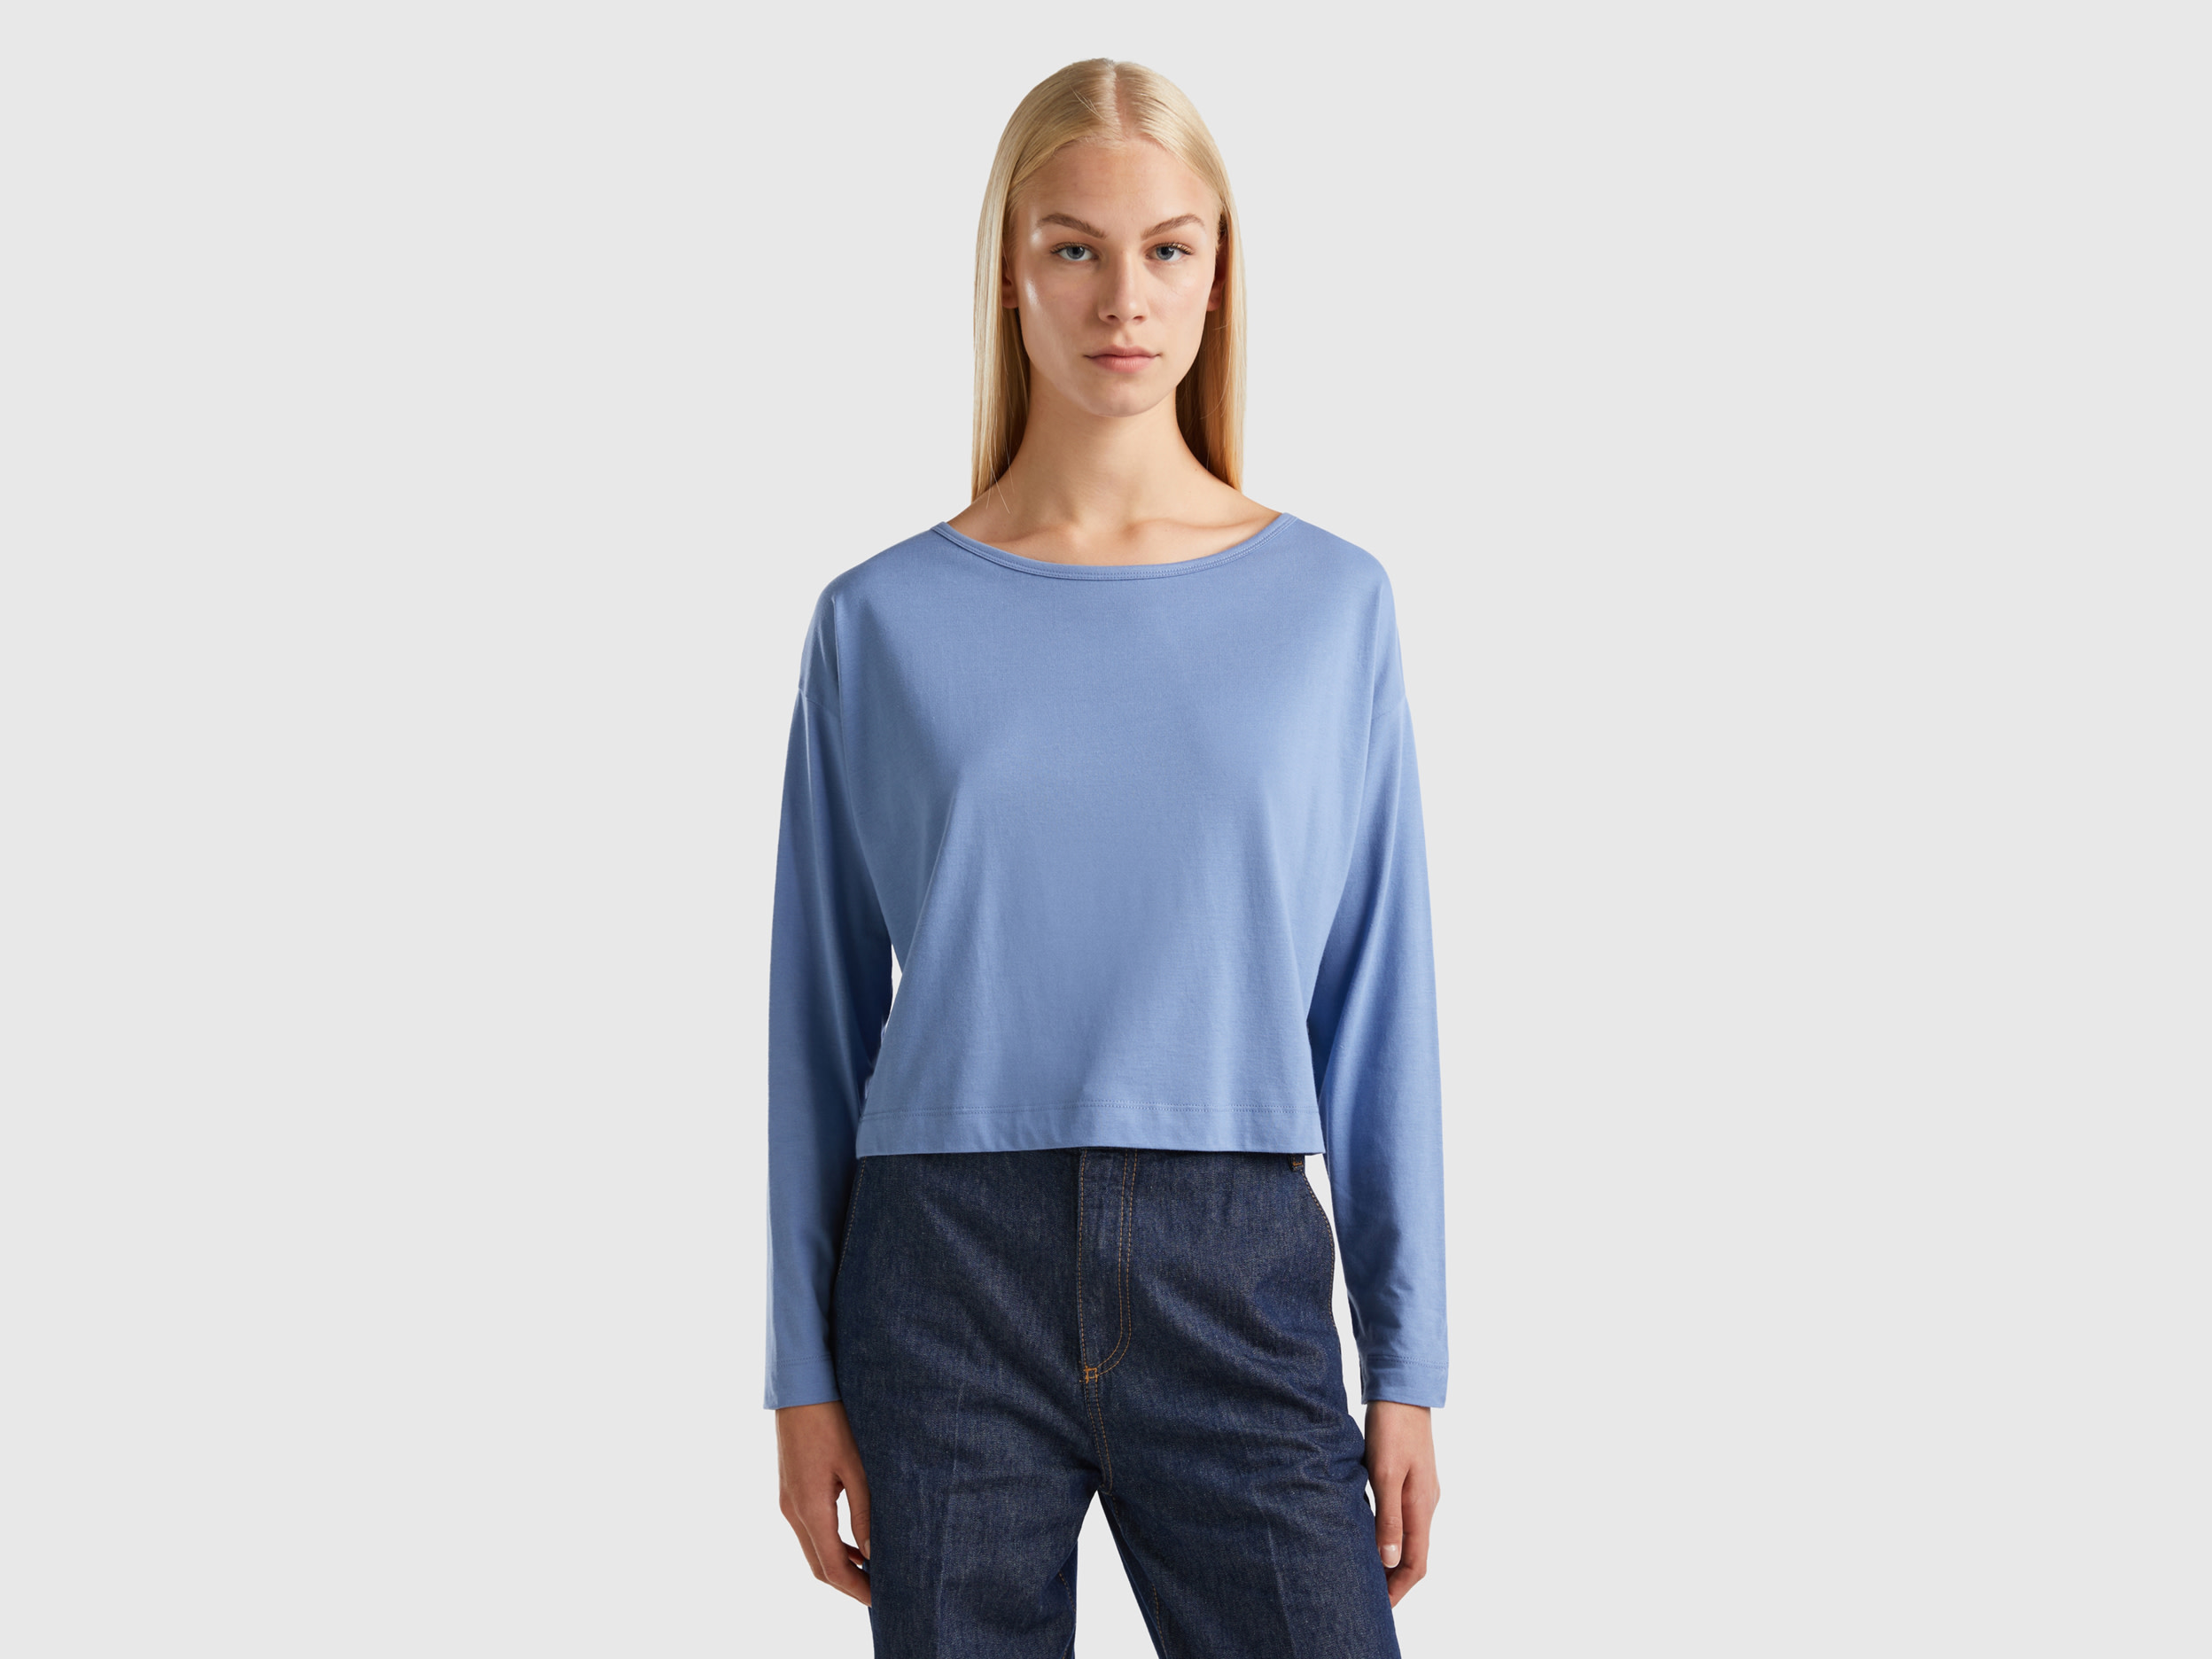 Benetton, Sky Blue Long Fiber Cotton T-shirt, size M, Light Blue, Women